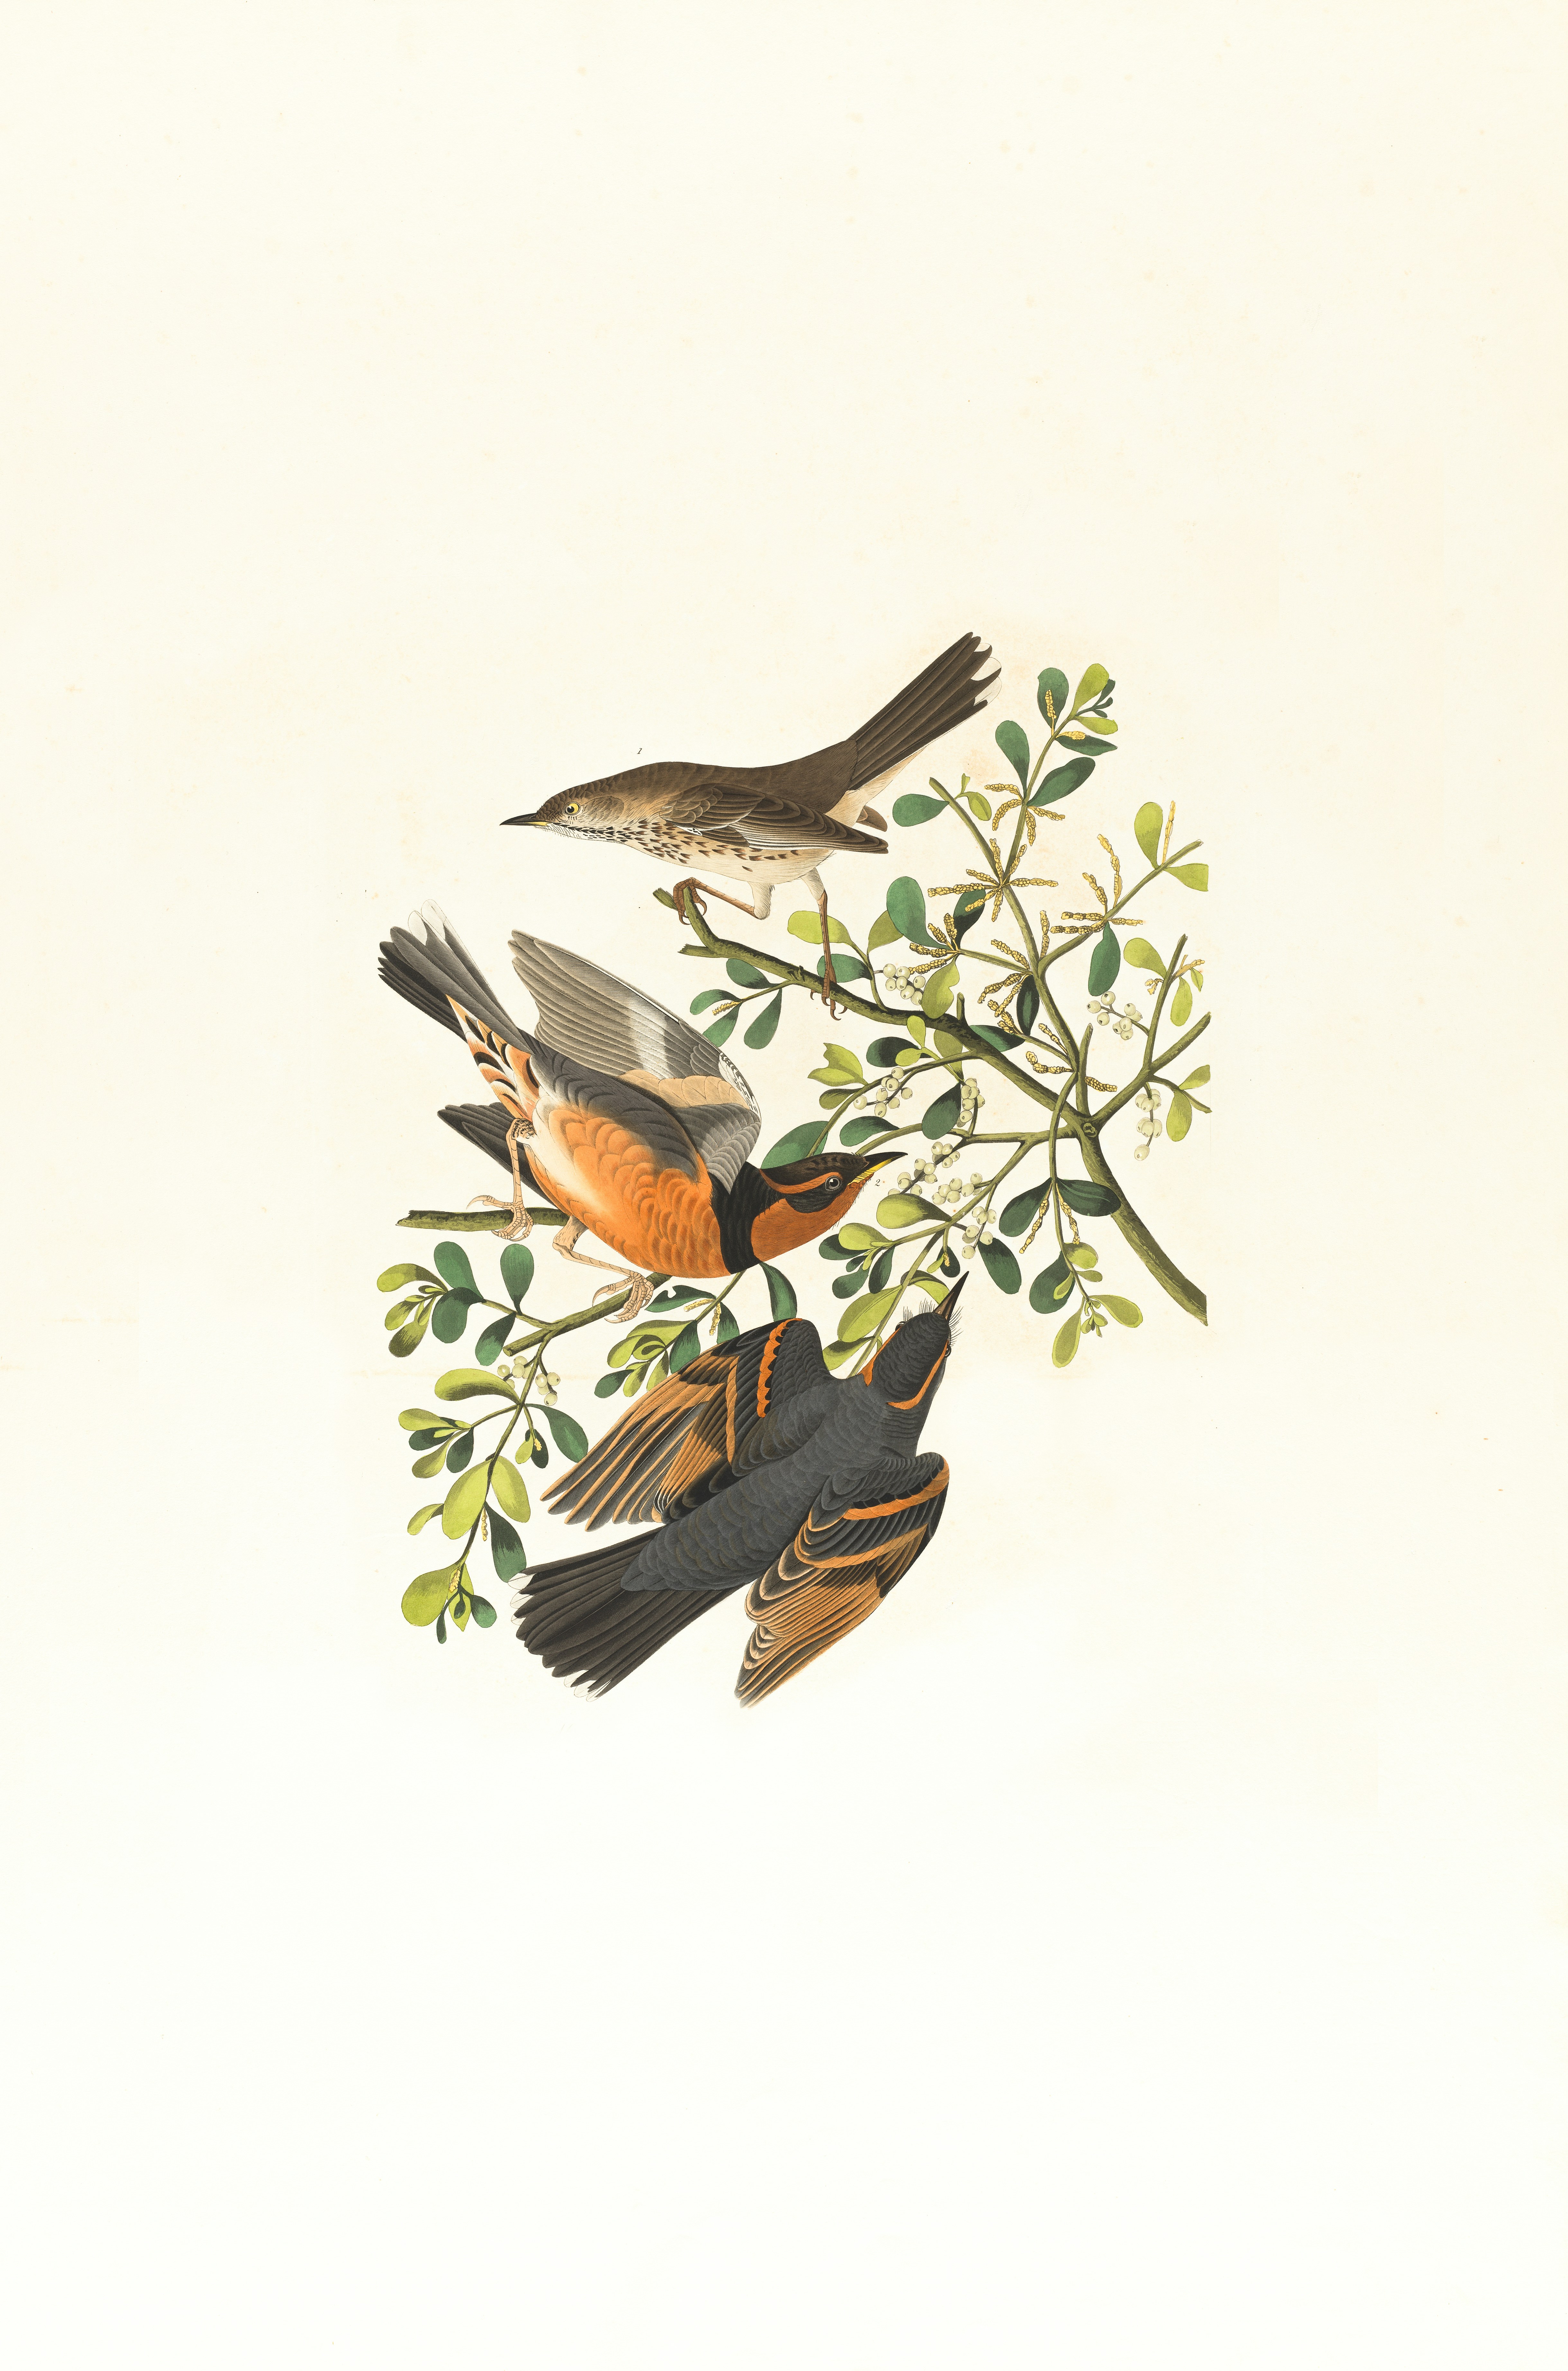 Mountain mocking bird,Varied thrush, male & female,Orpheus montanus. Artist: Audubon, John James, 1785-1851 https://ark.digitalcommonwealth.org/ark:/50959/9s16d744d Please visit Digital Commonwealth to view more images: https://www.digitalcommonwealth.org.